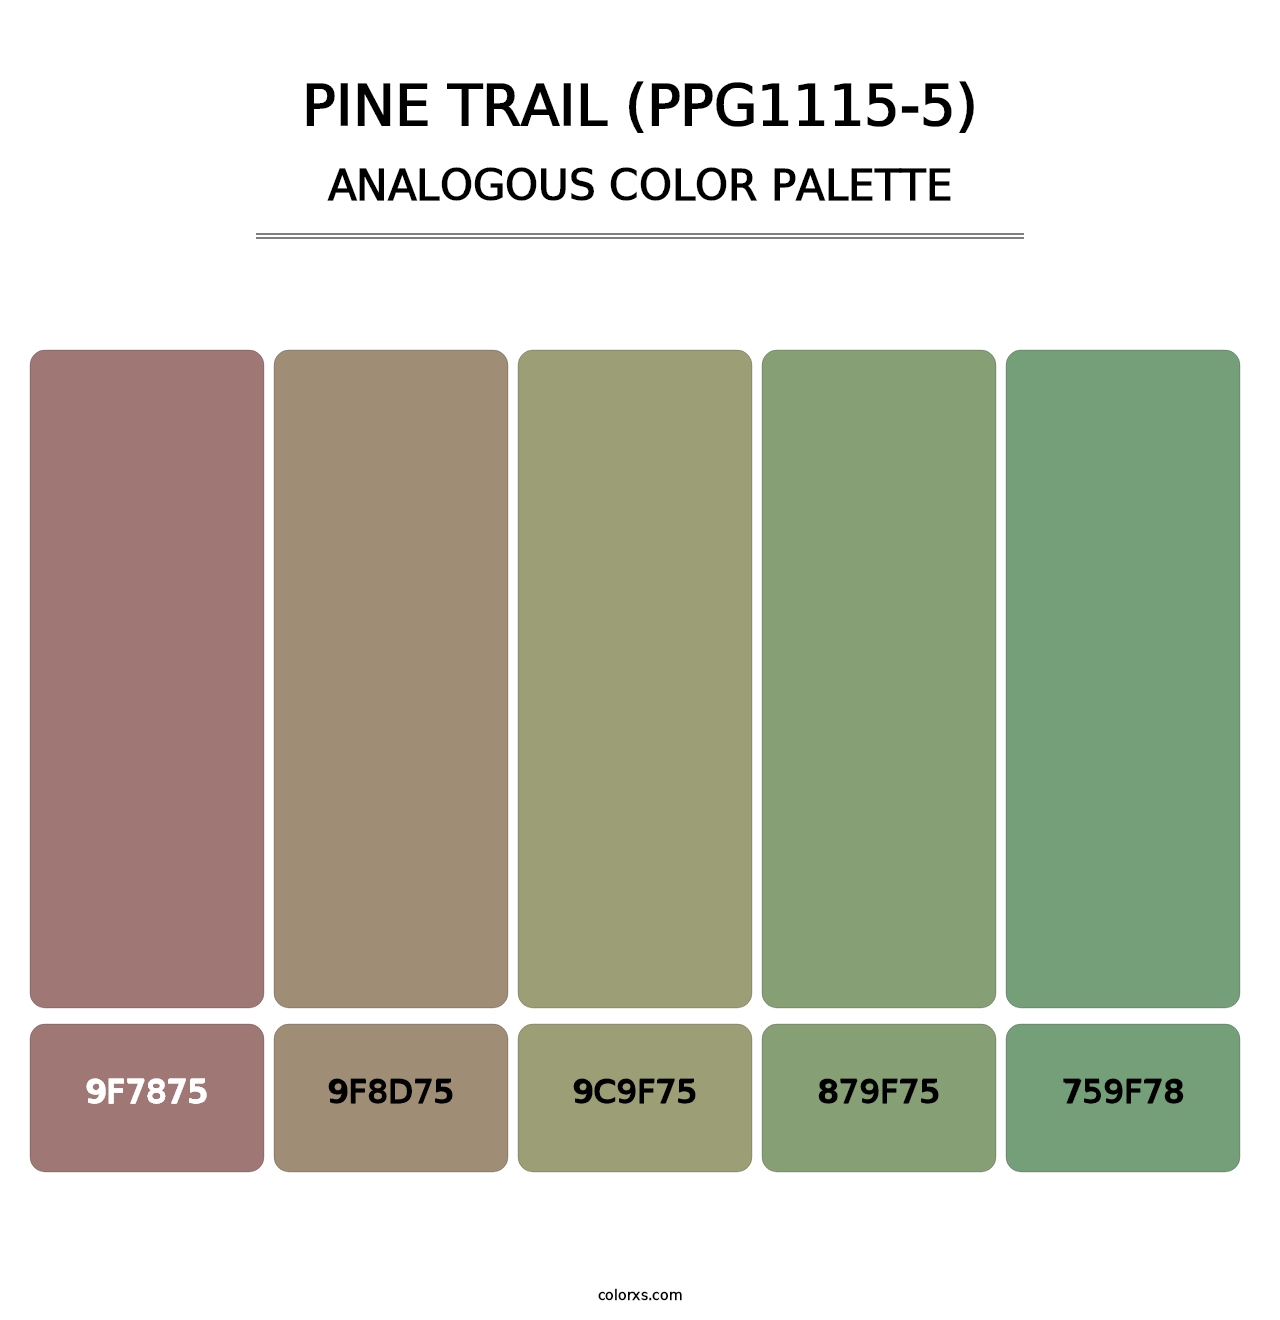 Pine Trail (PPG1115-5) - Analogous Color Palette